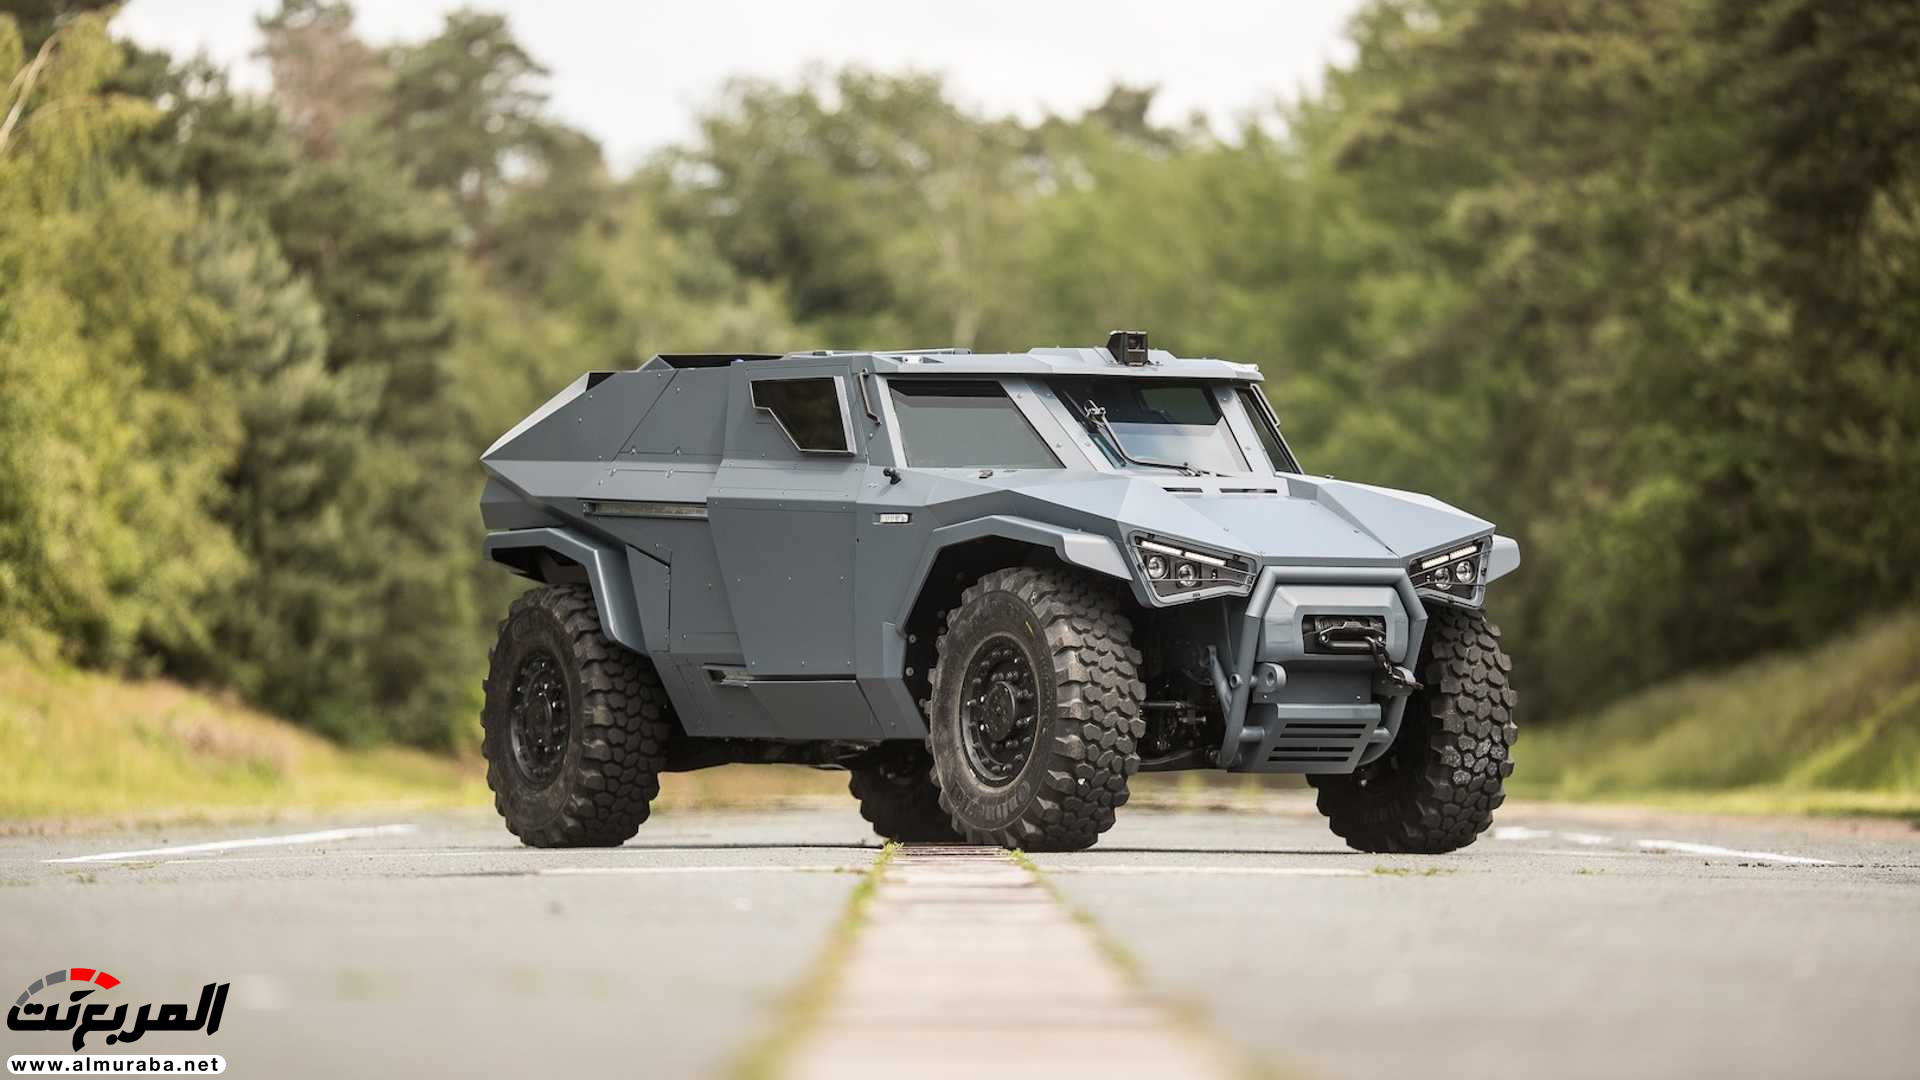 "بالفيديو والصور" فولفو صنعت سيارة عسكرية تنافس همر 7